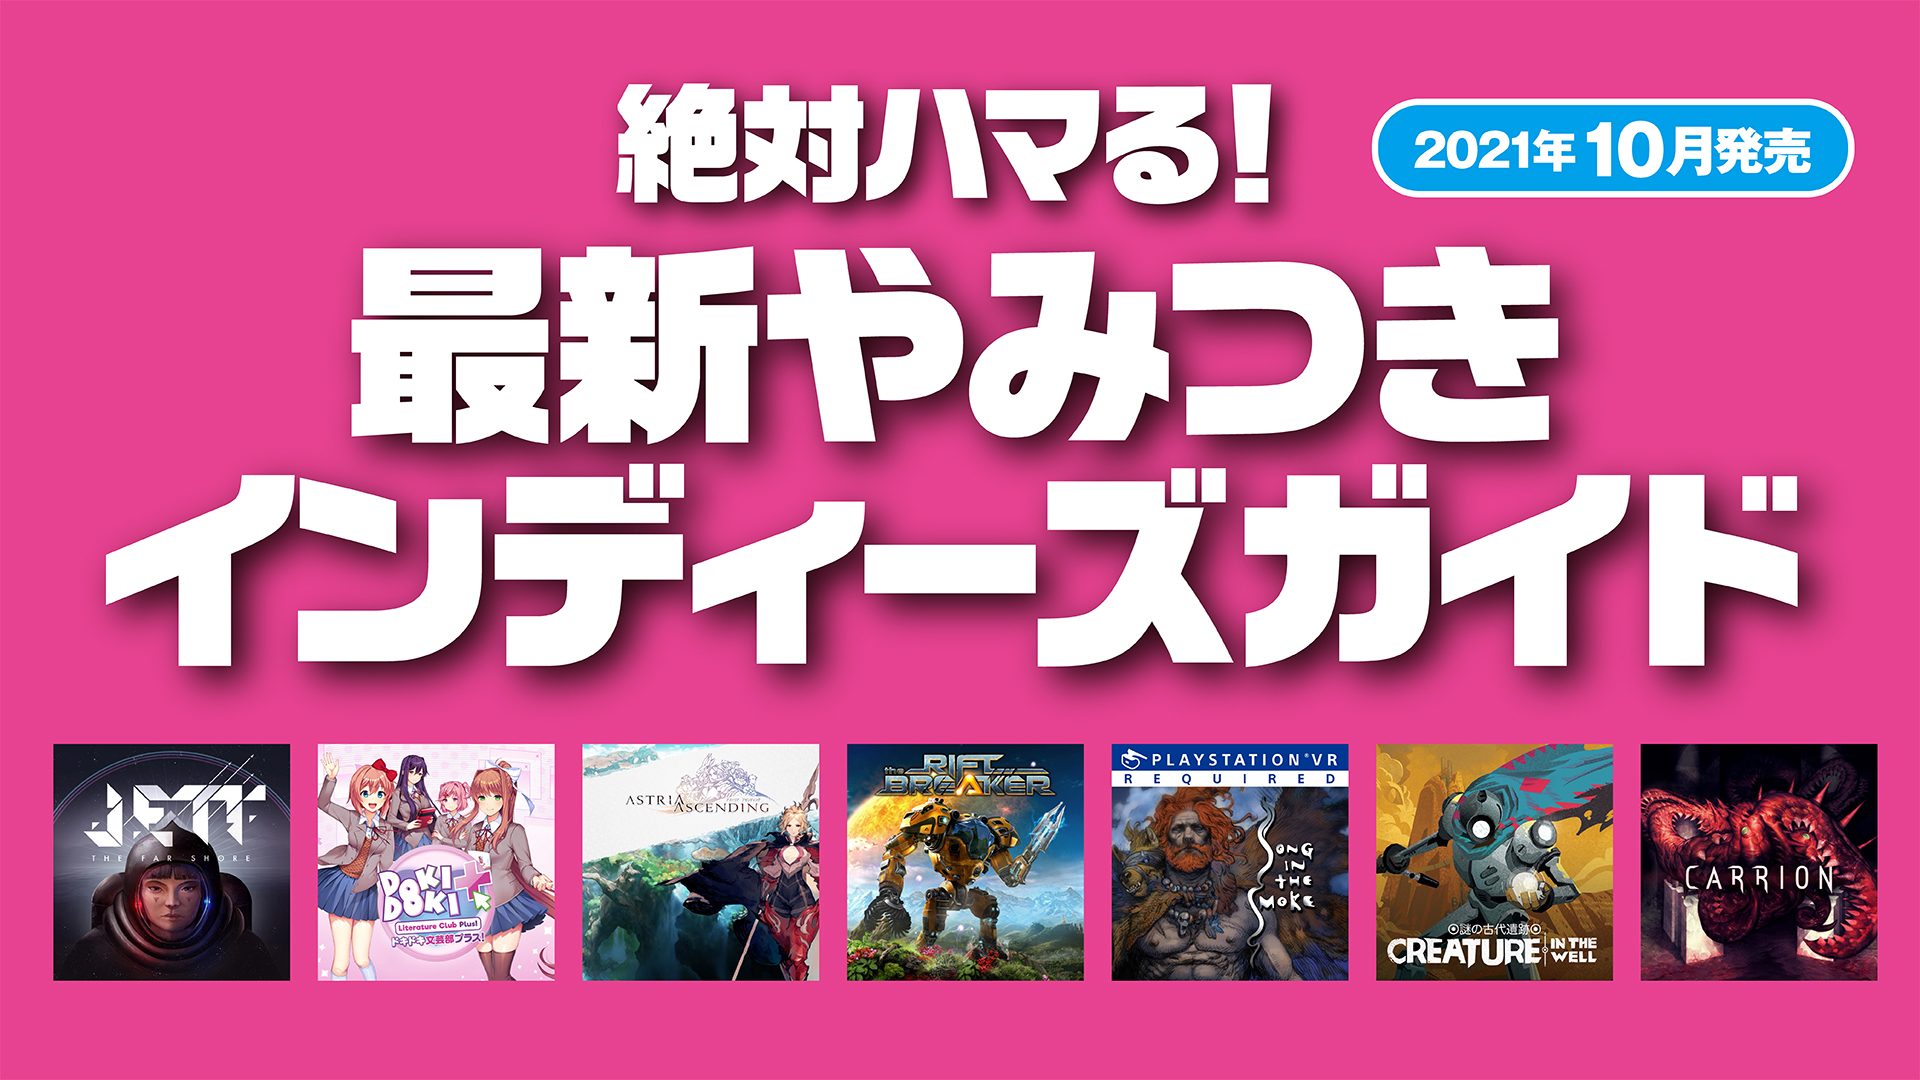 絶対ハマる 最新やみつきインディーズガイド 21年10月発売 Playstation Blog 日本語